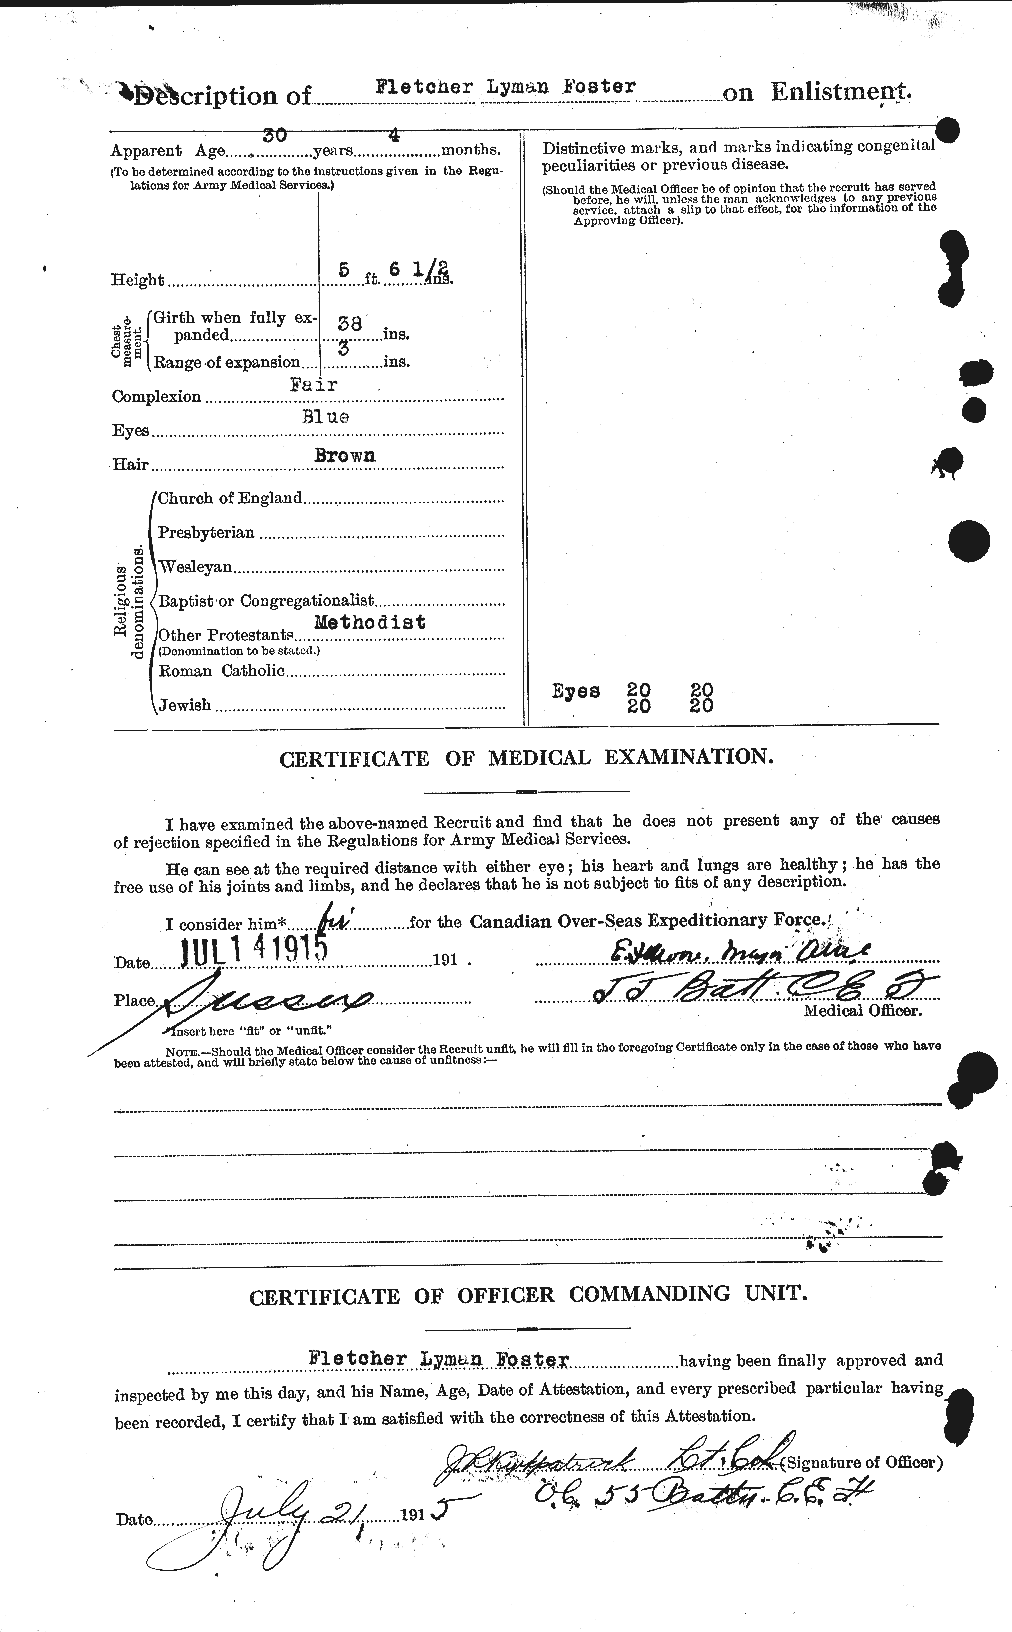 Dossiers du Personnel de la Première Guerre mondiale - CEC 330610b